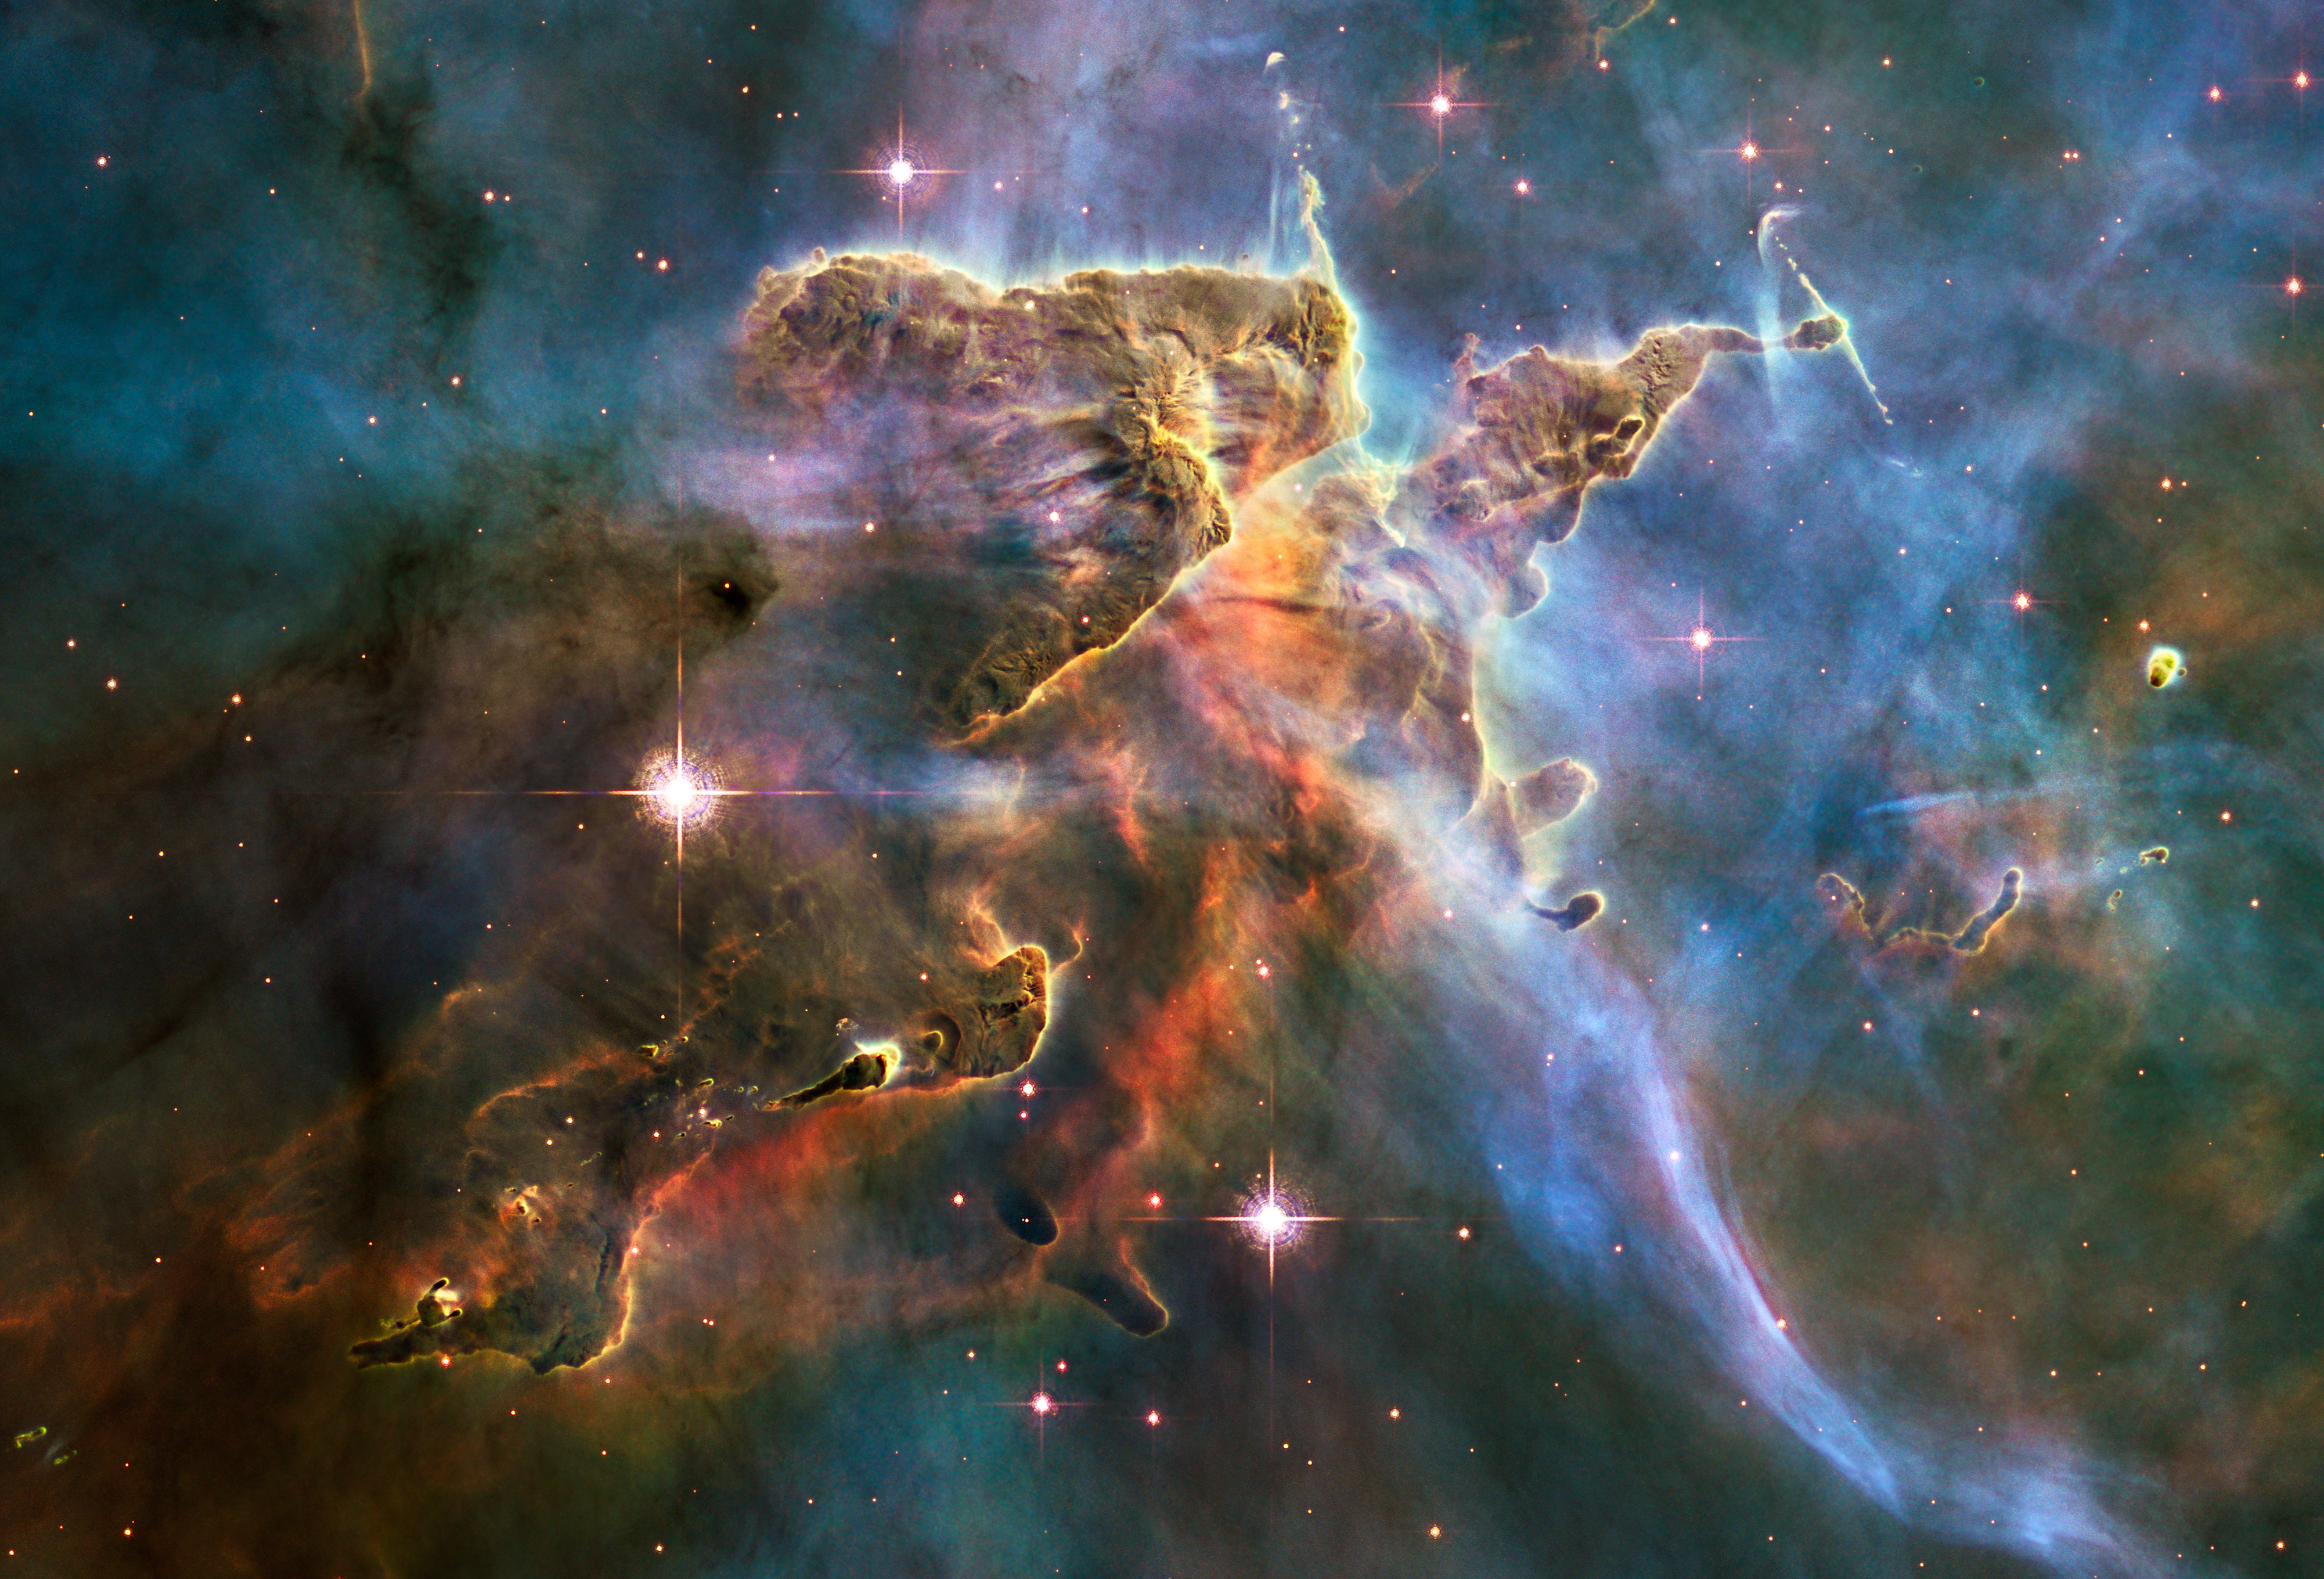 Space Nebula 4k Ultra HD Wallpaper | Background Image ...